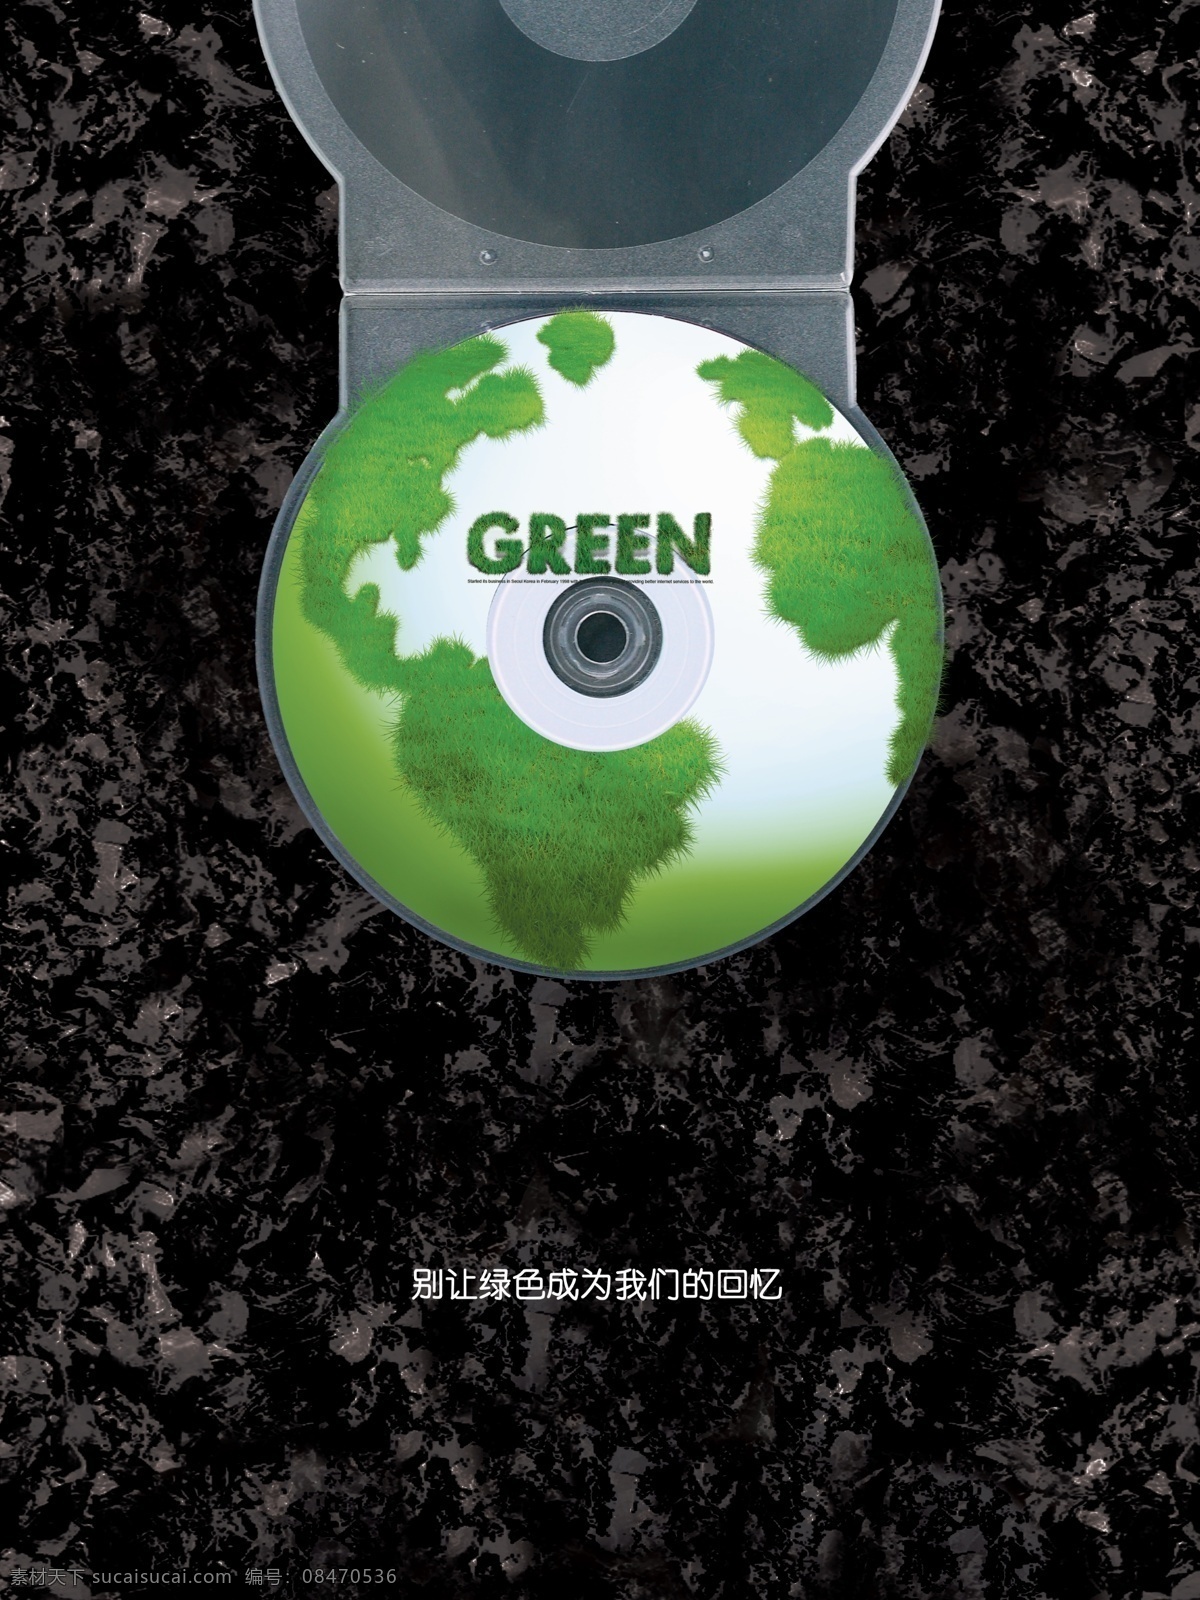 环保招贴 毕业设计 环保 白色污染 一次性光碟 地球 环保海报 公益海报 公益招贴 环境保护 公益 白色垃圾 系列海报 光碟 广告设计模板 源文件